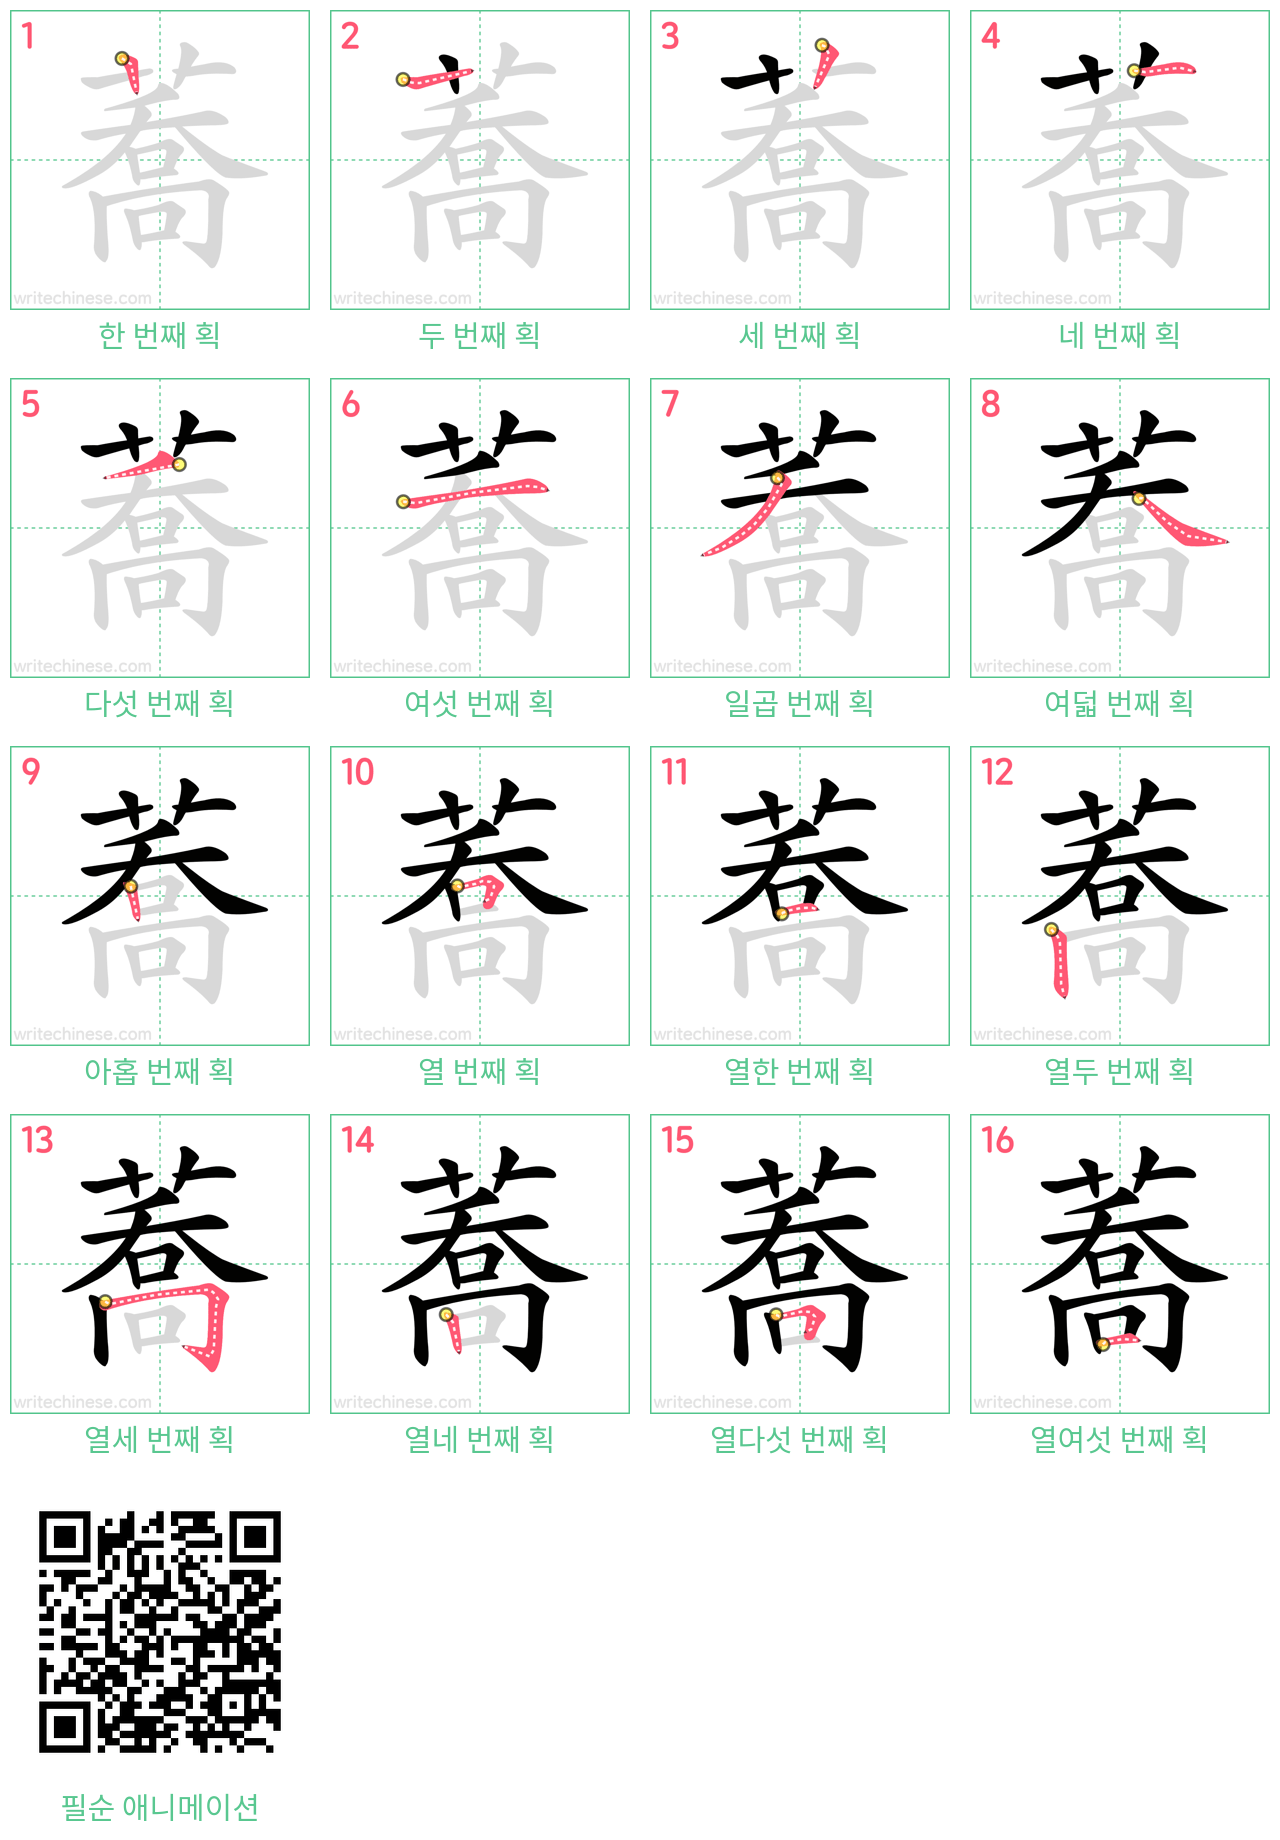 蕎 step-by-step stroke order diagrams